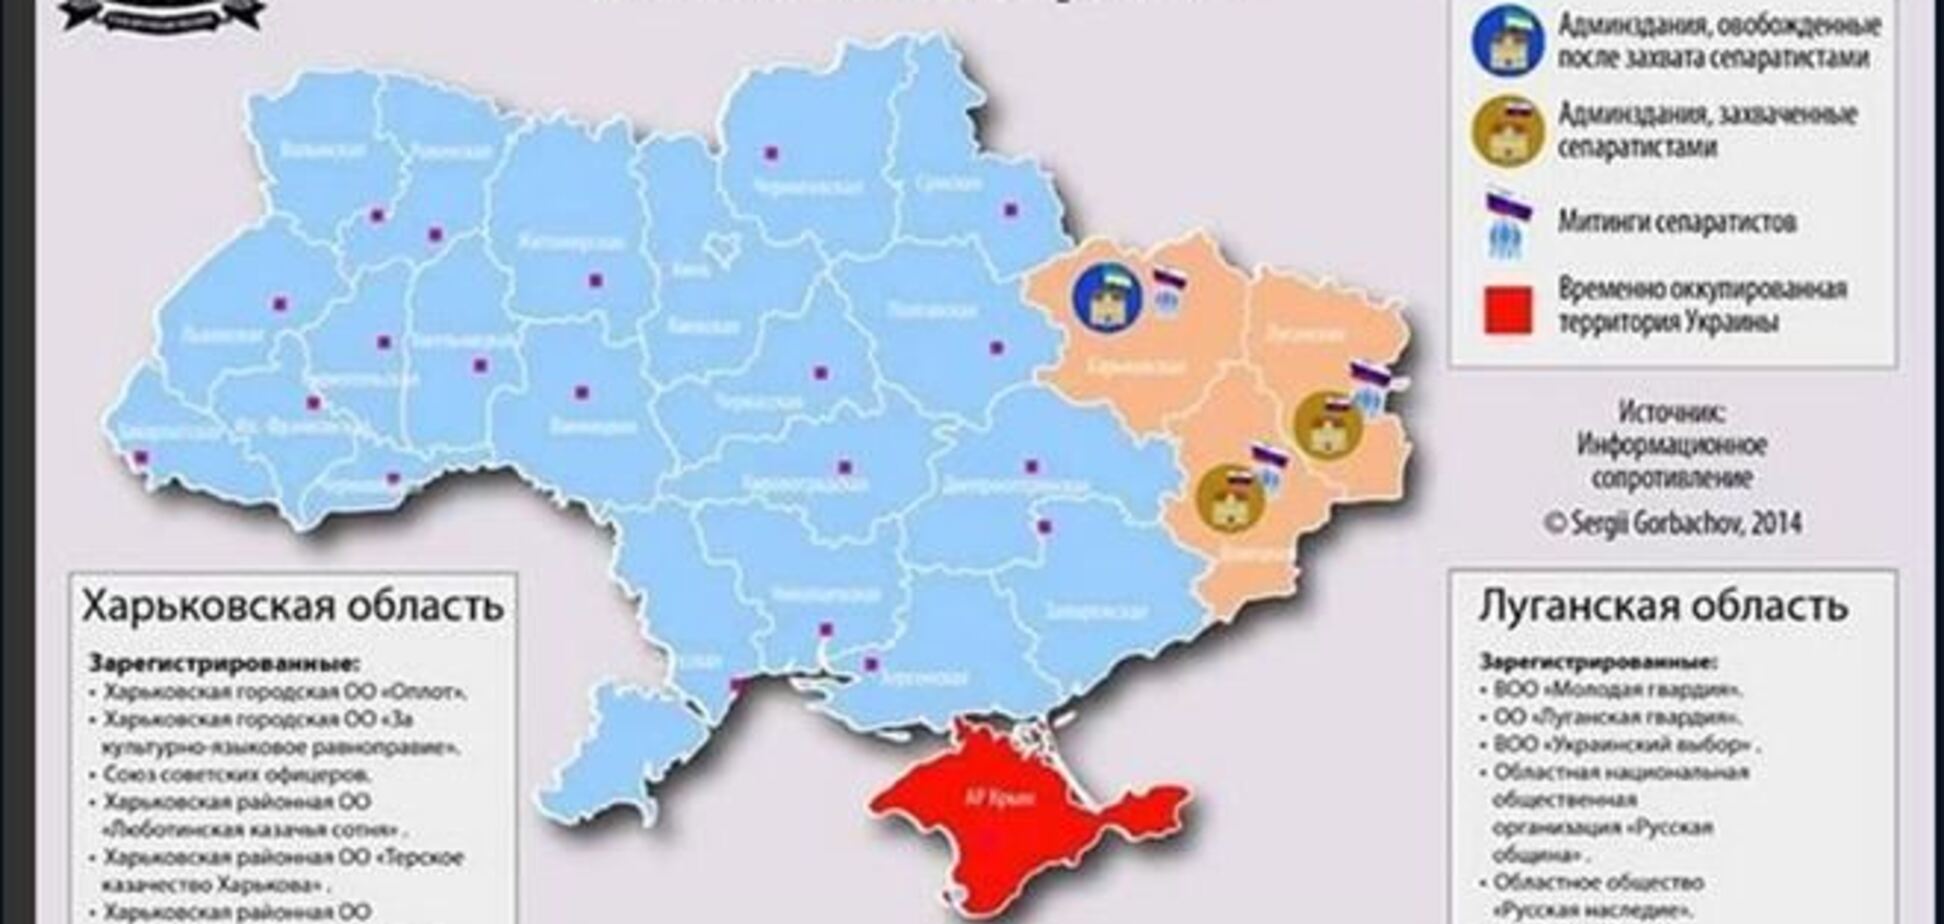 Опублікована актуальна карта сепаратистських виступів в Україні